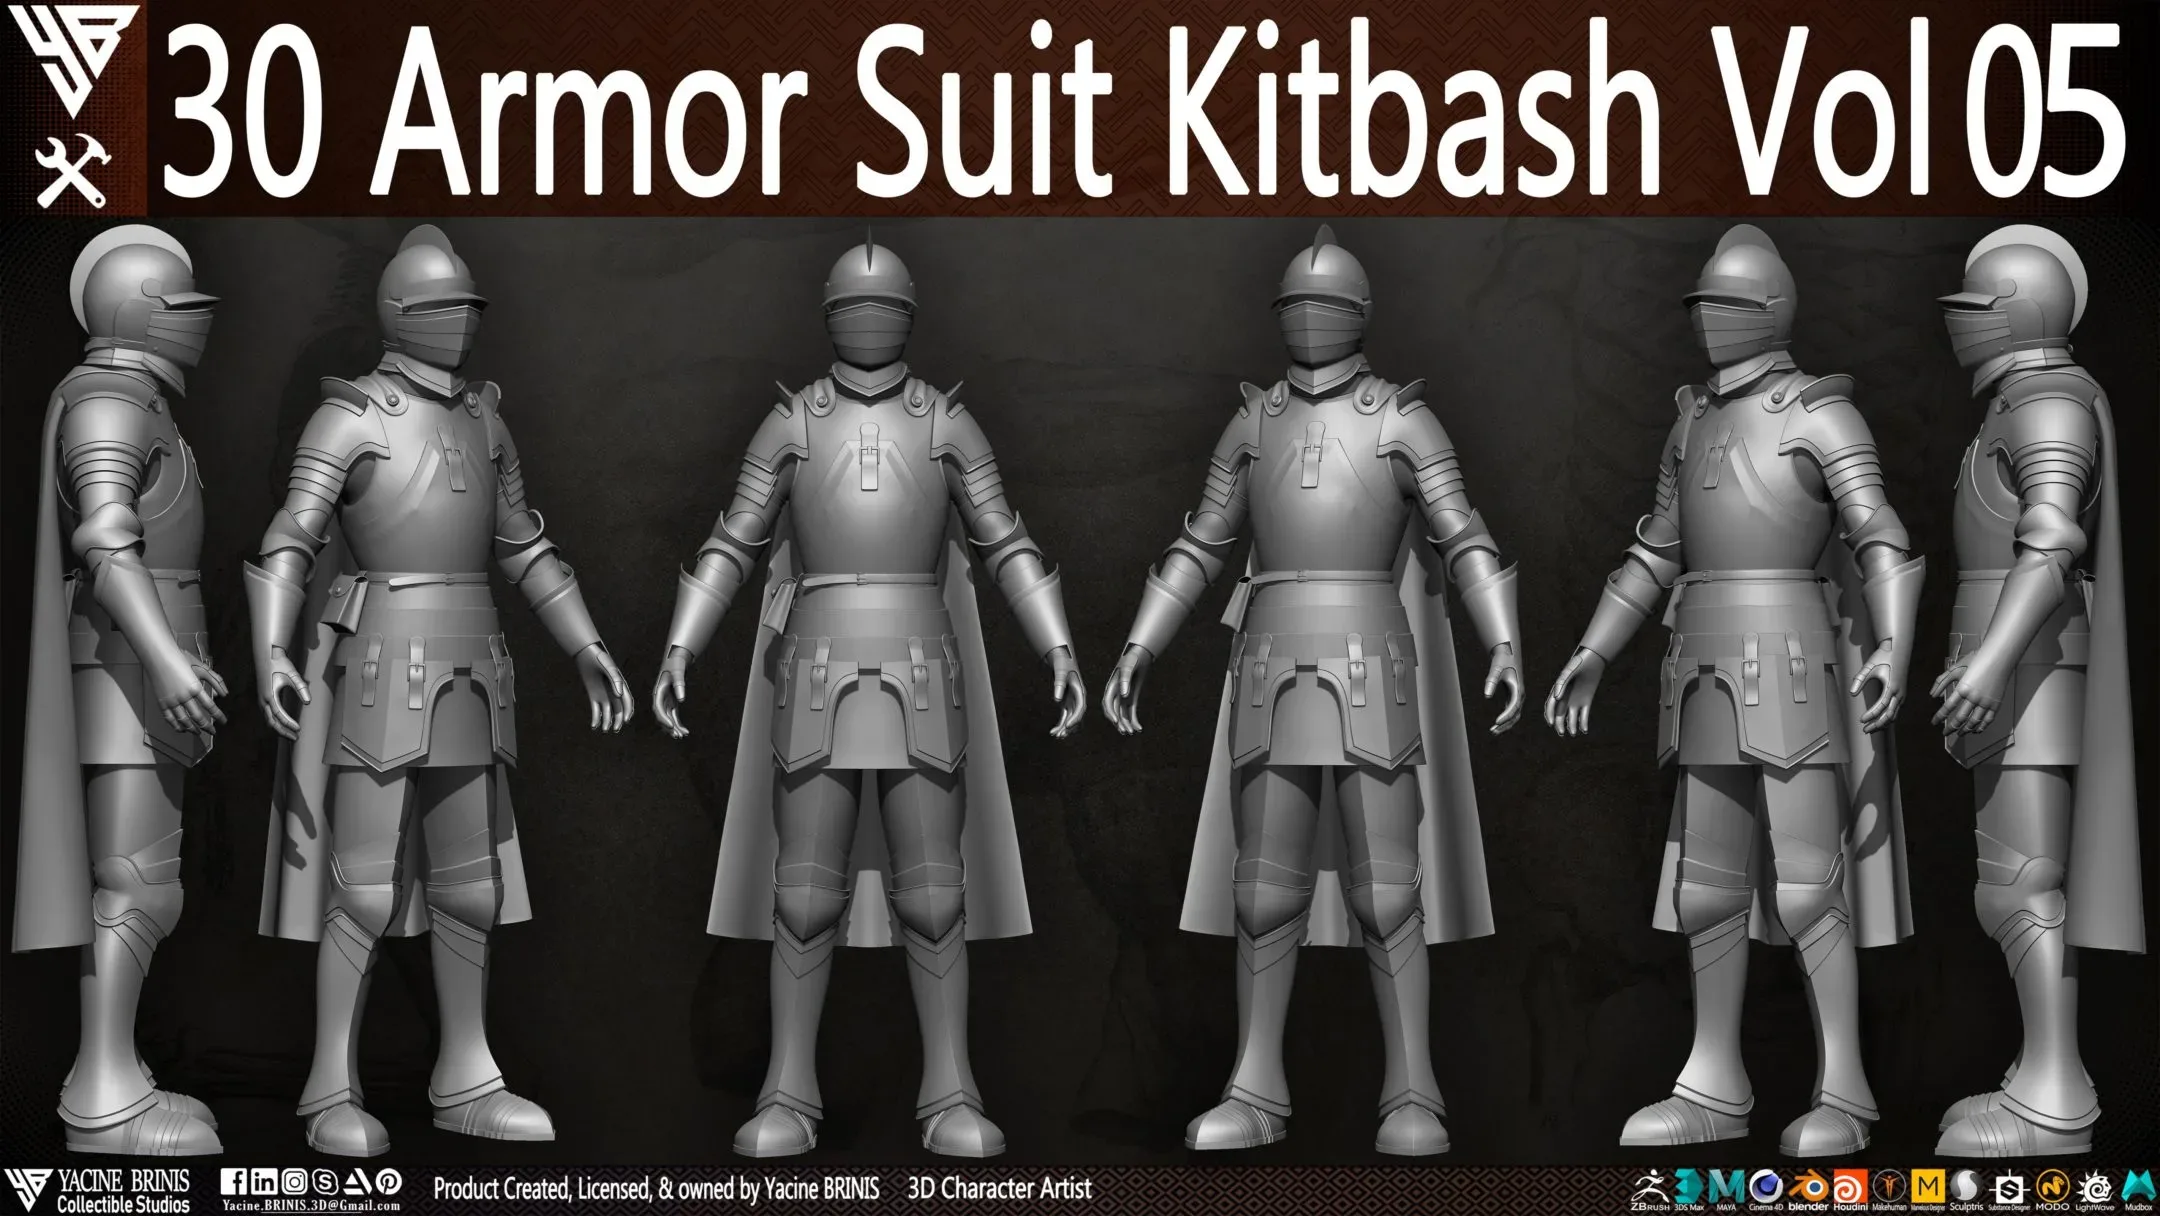 30 Armor Suit Kitbash Vol 05